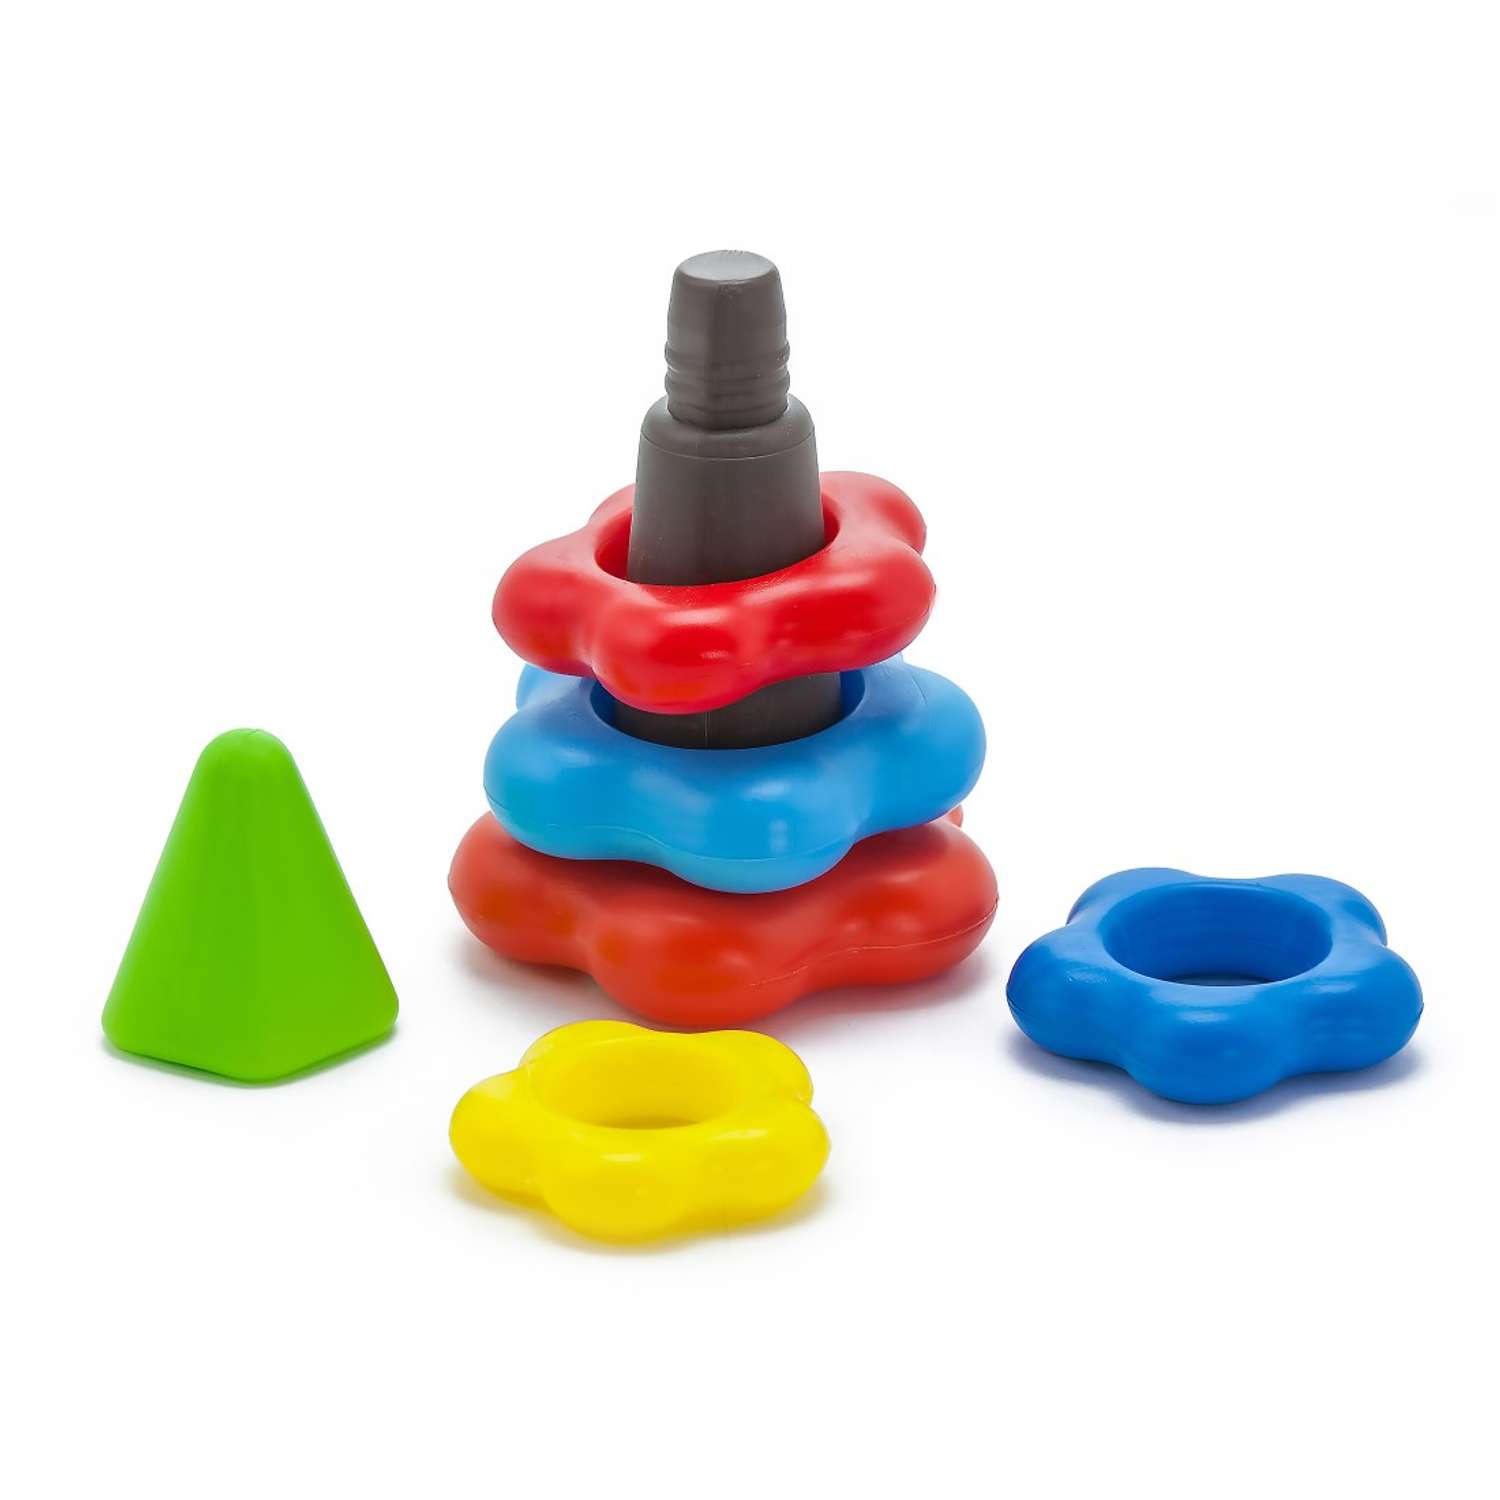 Развивающие игрушки БИПЛАНТ для малышей конструктор Кноп-Кнопыч 61 деталь + Пирамидка малая + Команда КВА - фото 8